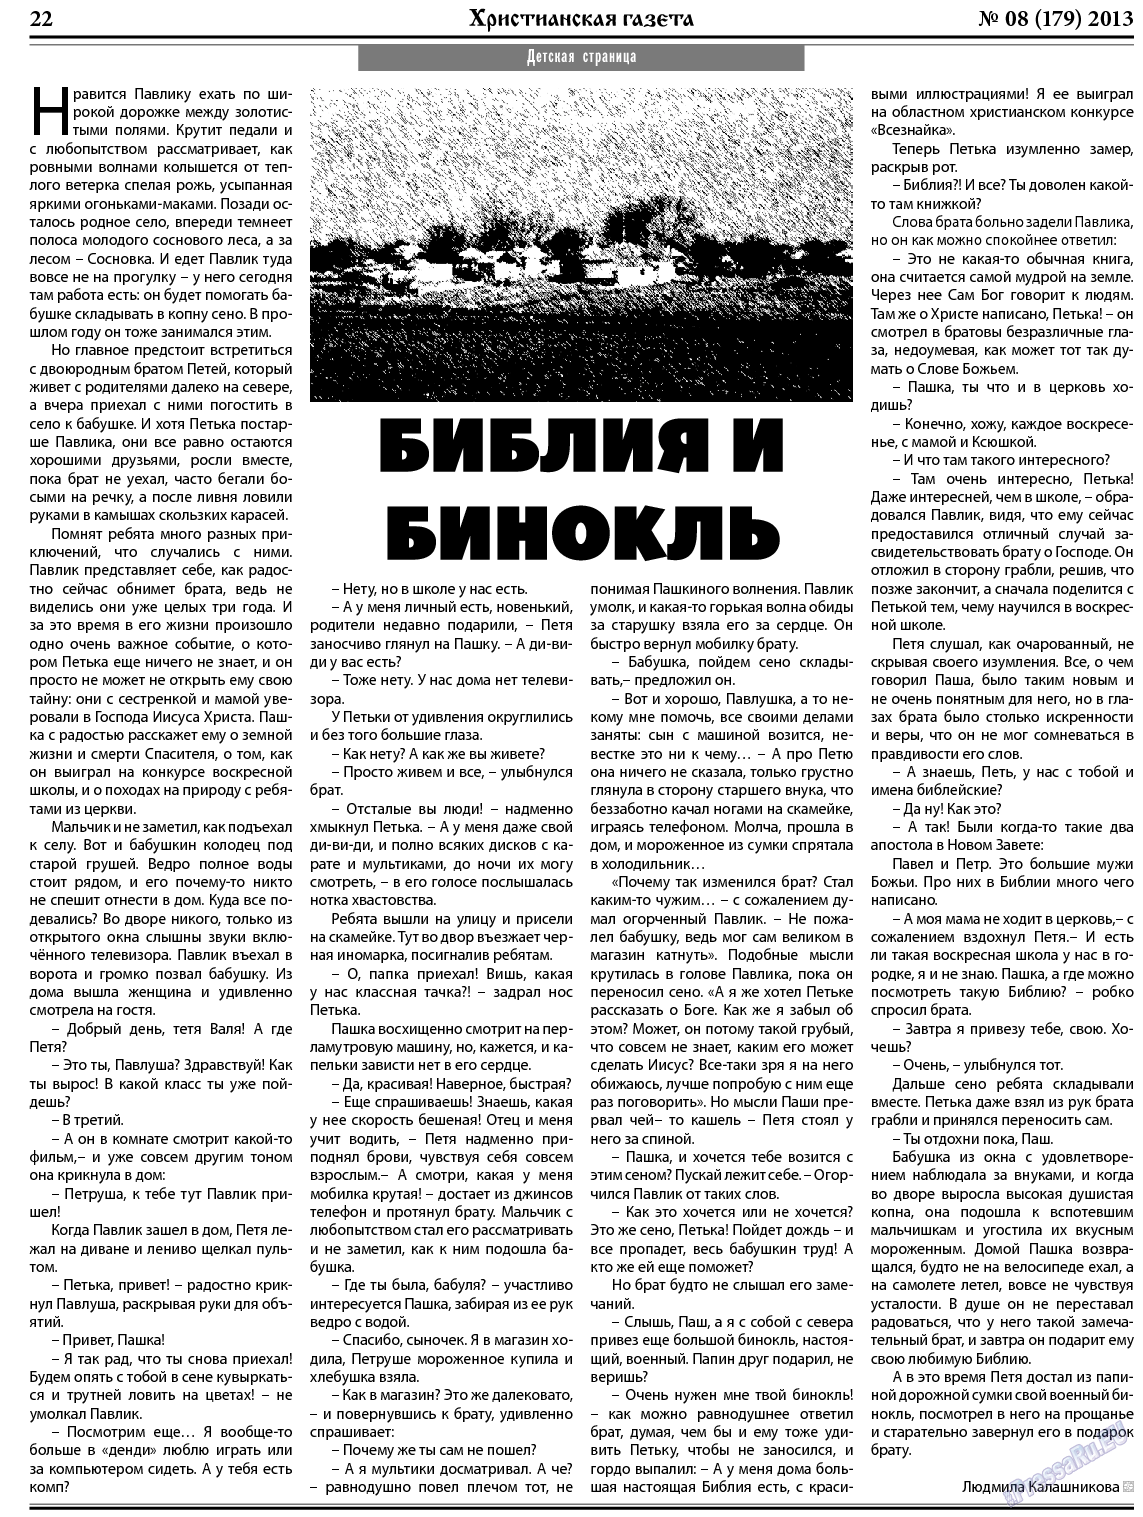 Христианская газета, газета. 2013 №8 стр.30